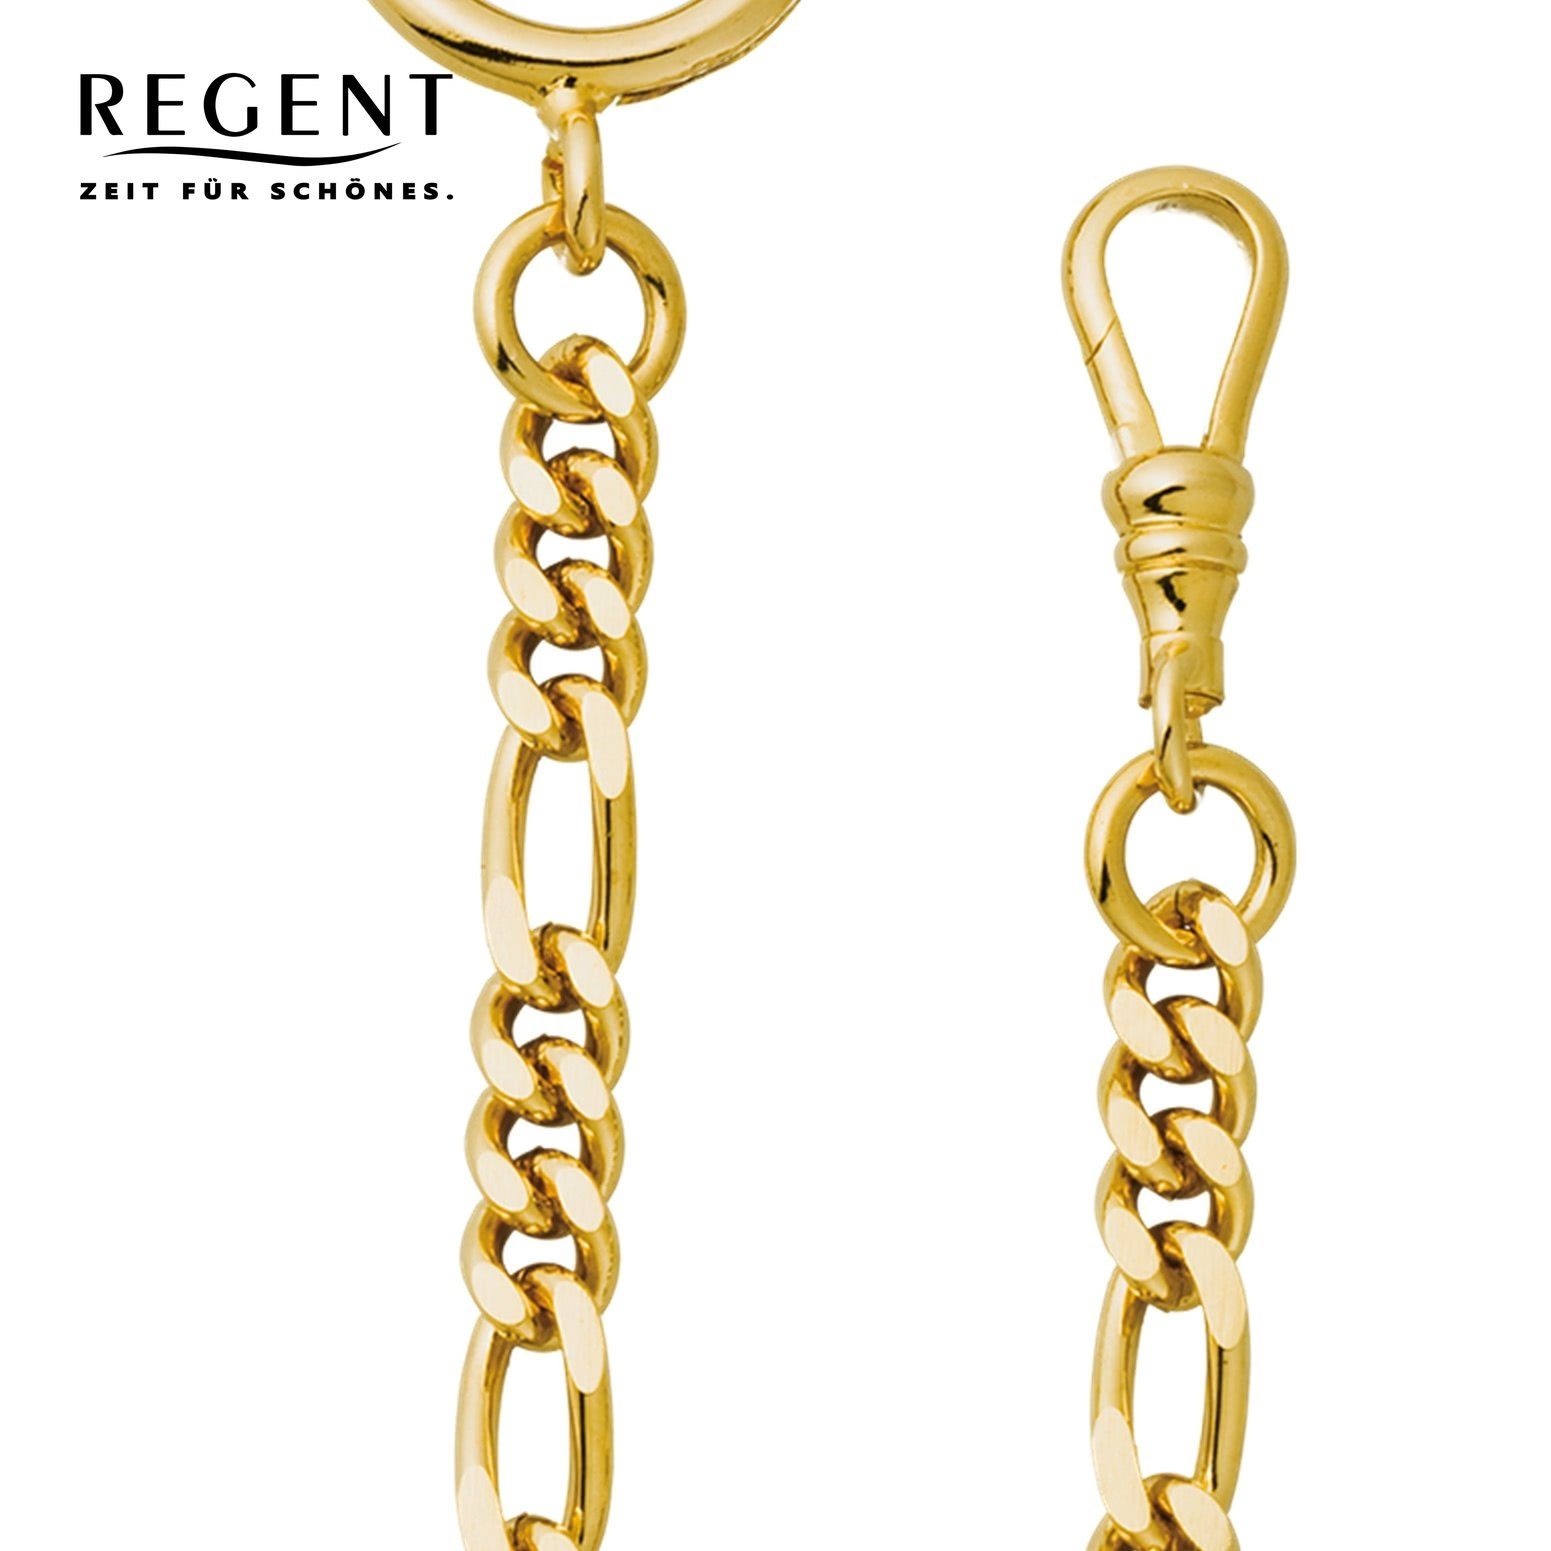 Regent 5mm Regent Taschenuhrenkette, Kettenuhr Taschenuhren-Kette Herren Figaro, Elegant P-48